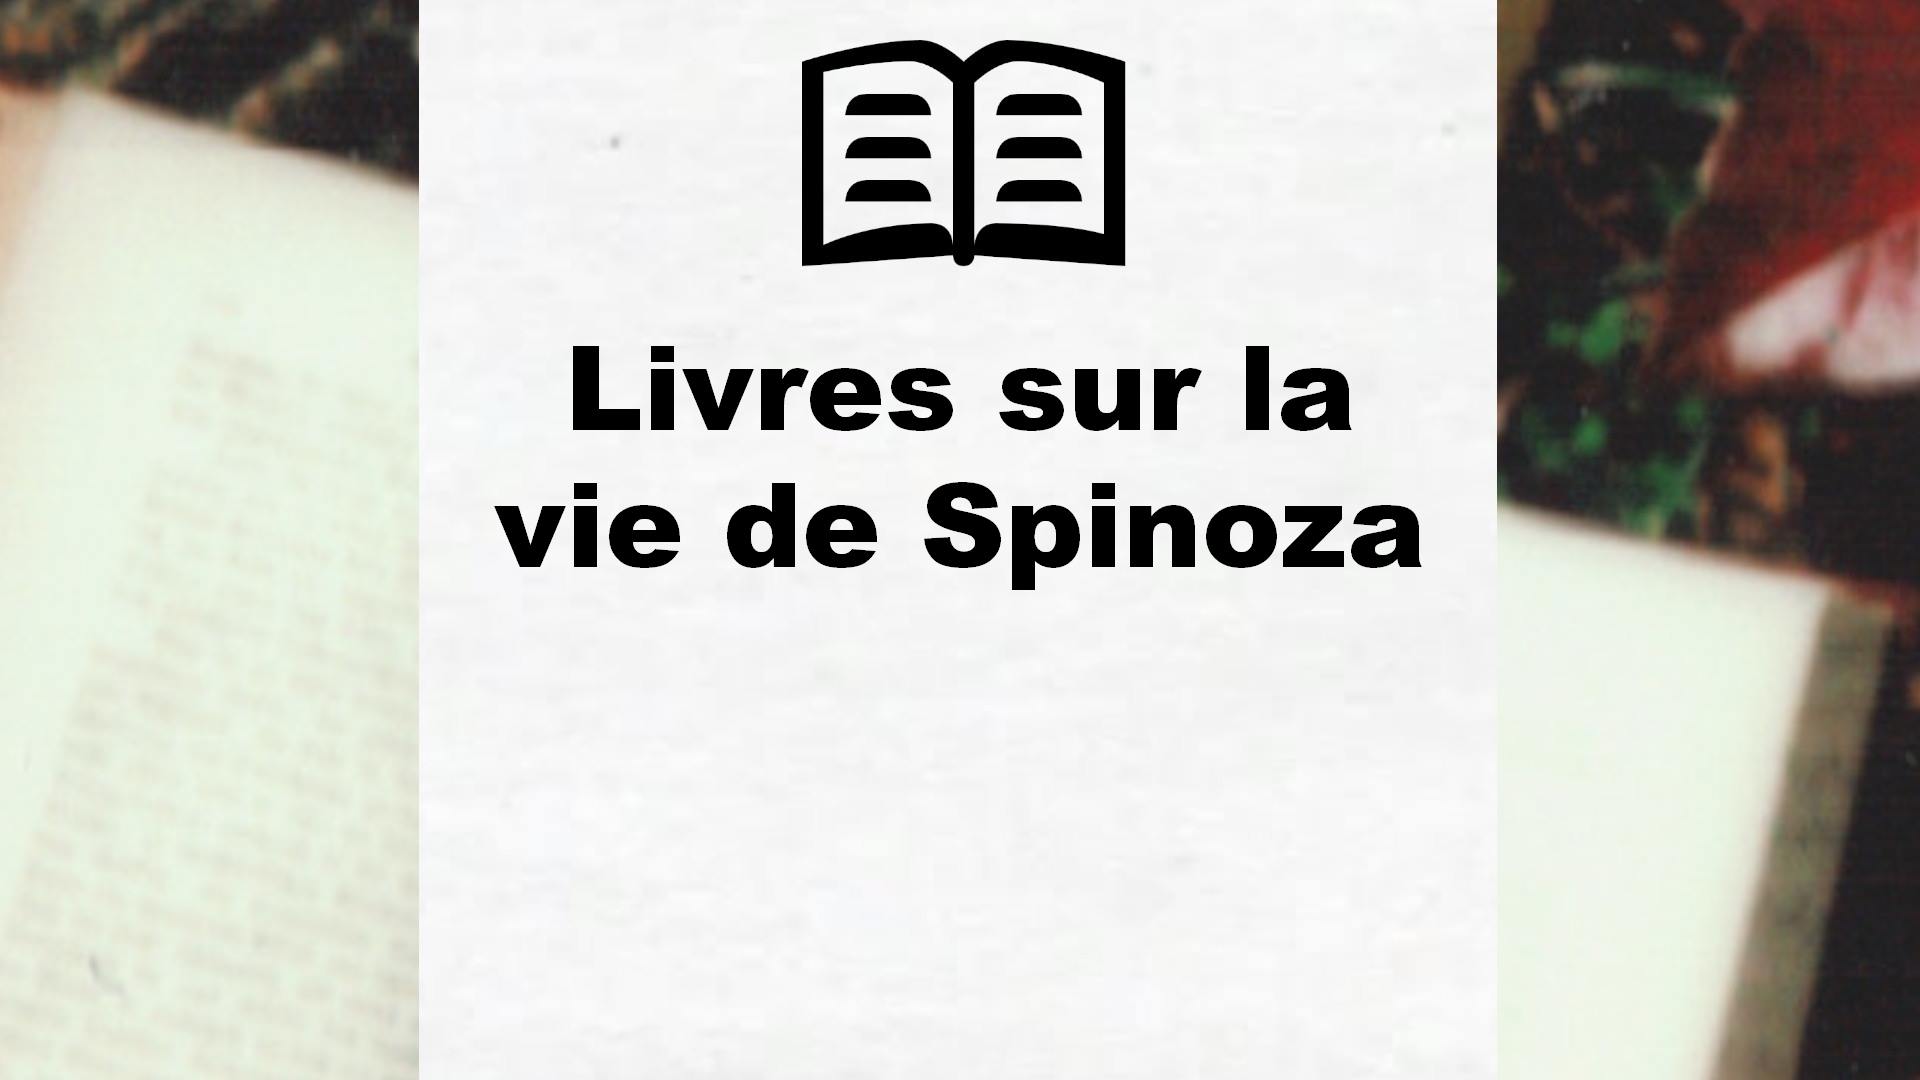 Livres sur la vie de Spinoza